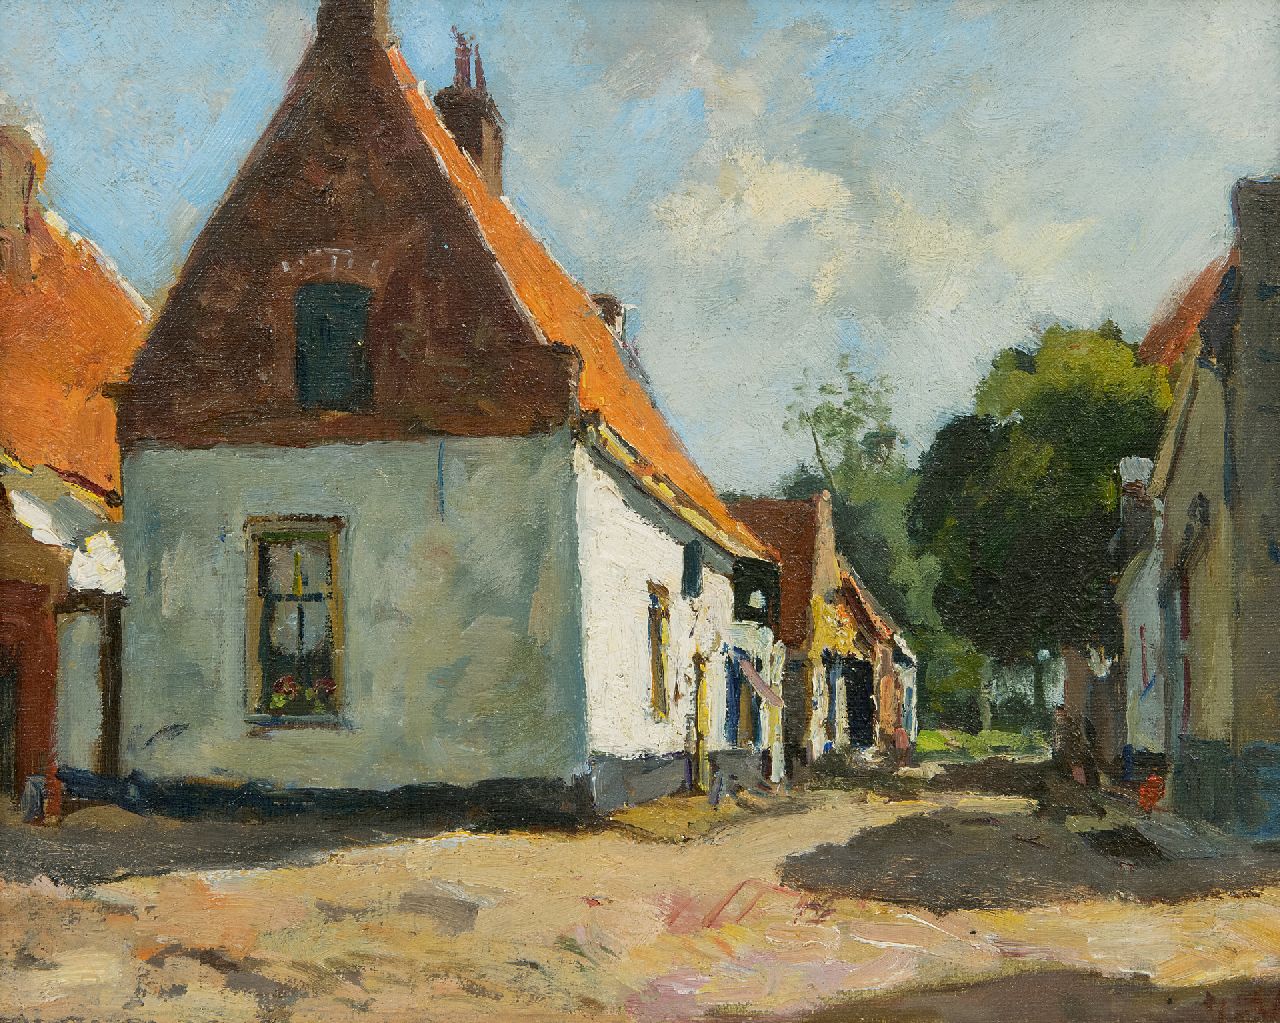 Vuuren J. van | Jan van Vuuren | Schilderijen te koop aangeboden | Zonnig straatje in Elburg, olieverf op doek 24,1 x 30,1 cm, gesigneerd rechtsonder